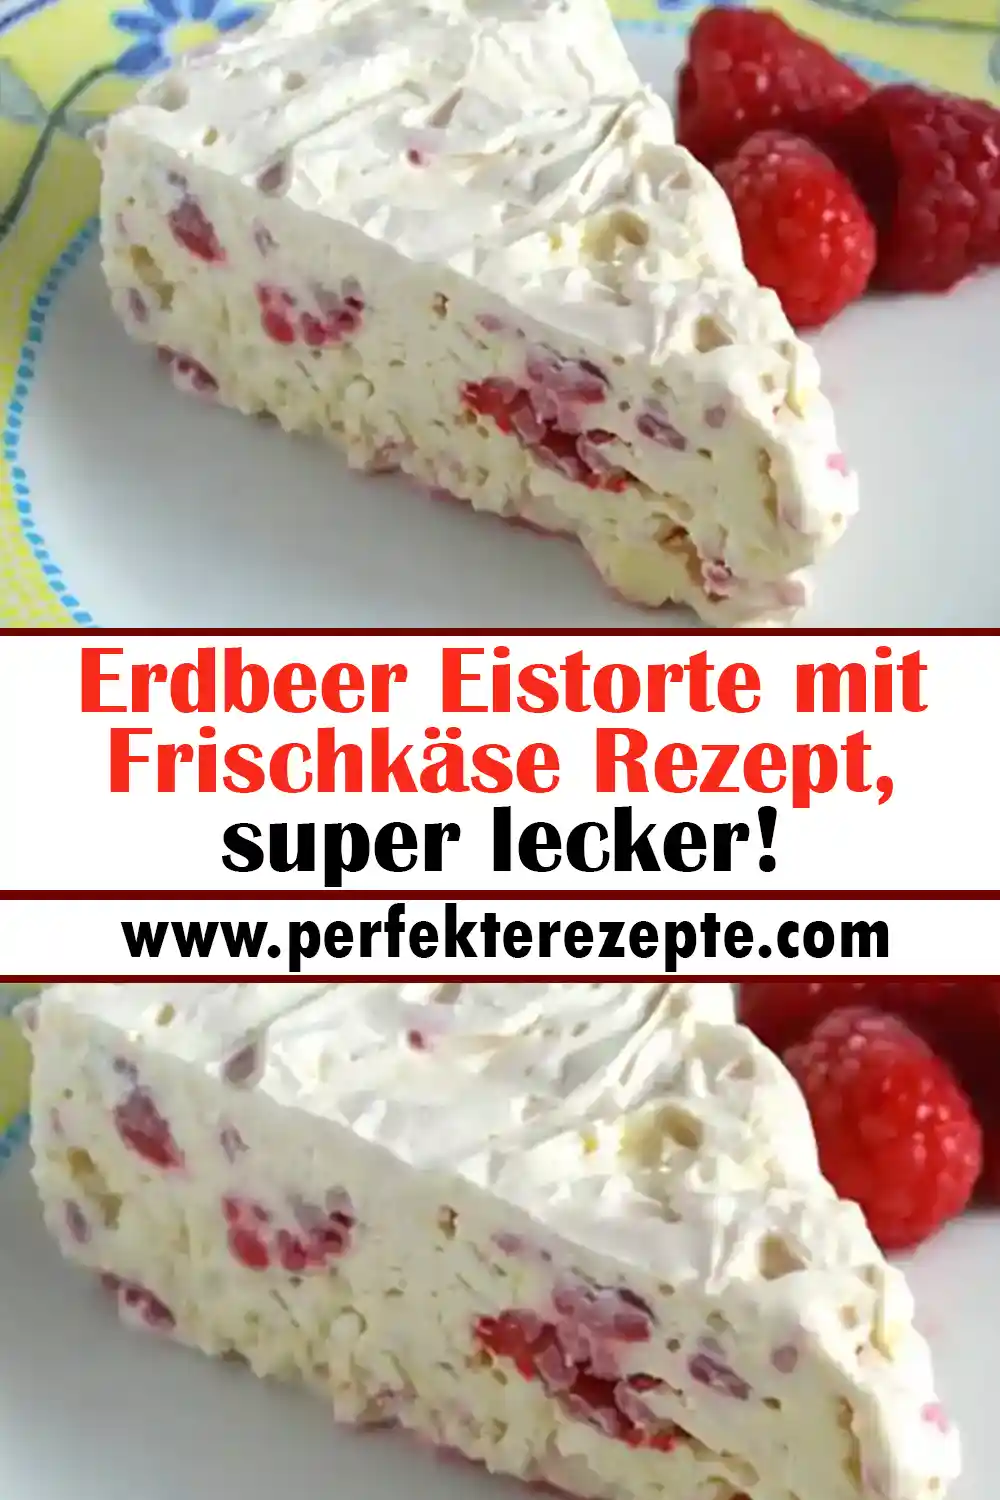 Erdbeer Eistorte mit Frischkäse Rezept, super lecker!